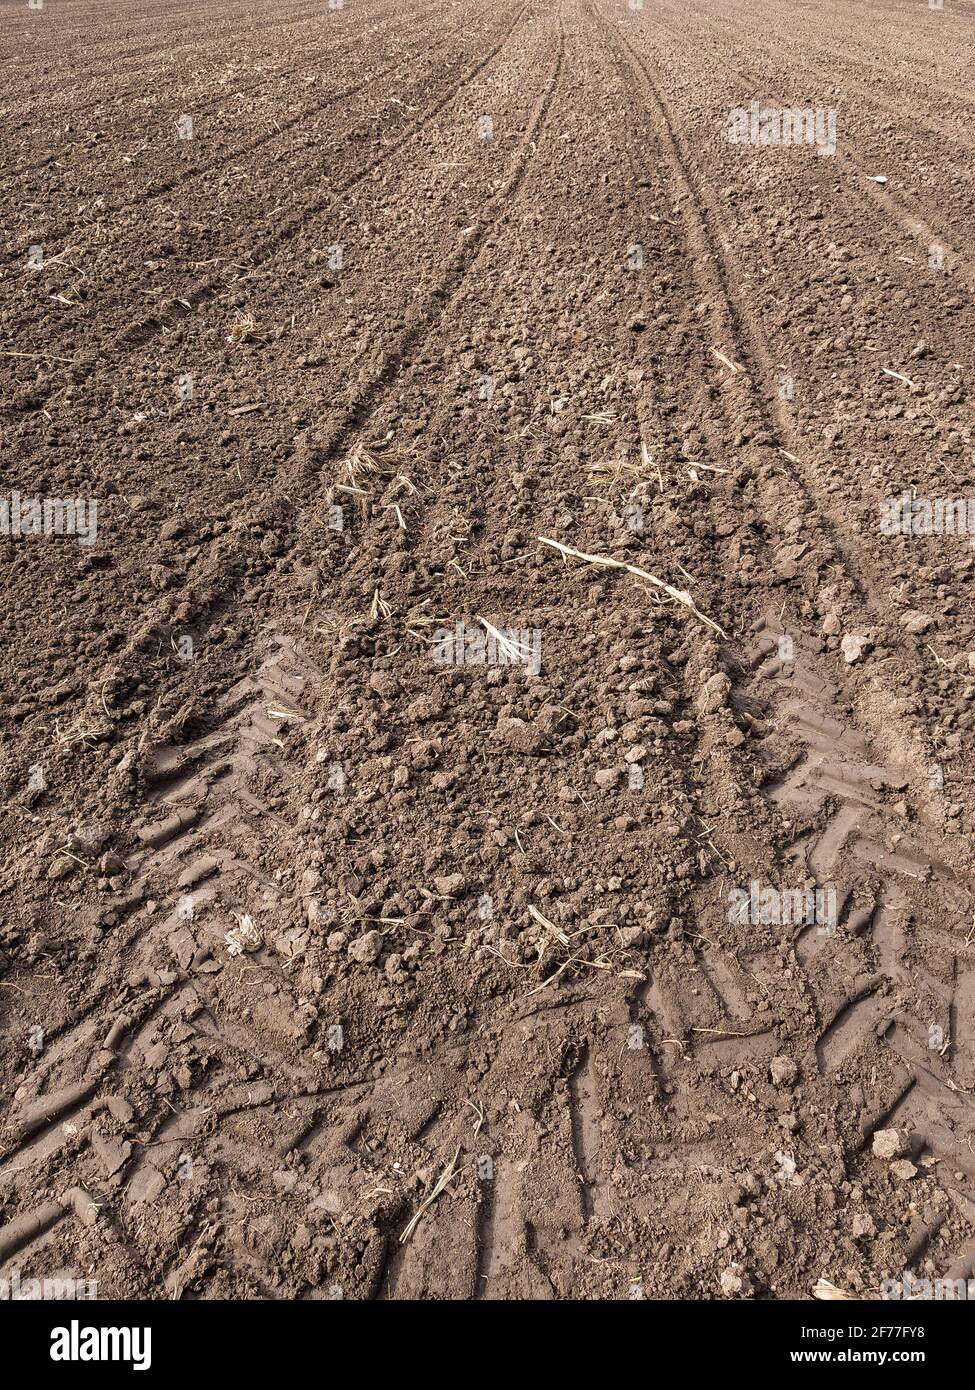 Ackerland. Vorbereitung des Feldes für die Pflanzung. Gepflügte Erde im Frühling. Landwirtschaftliche Arbeit. Stockfoto